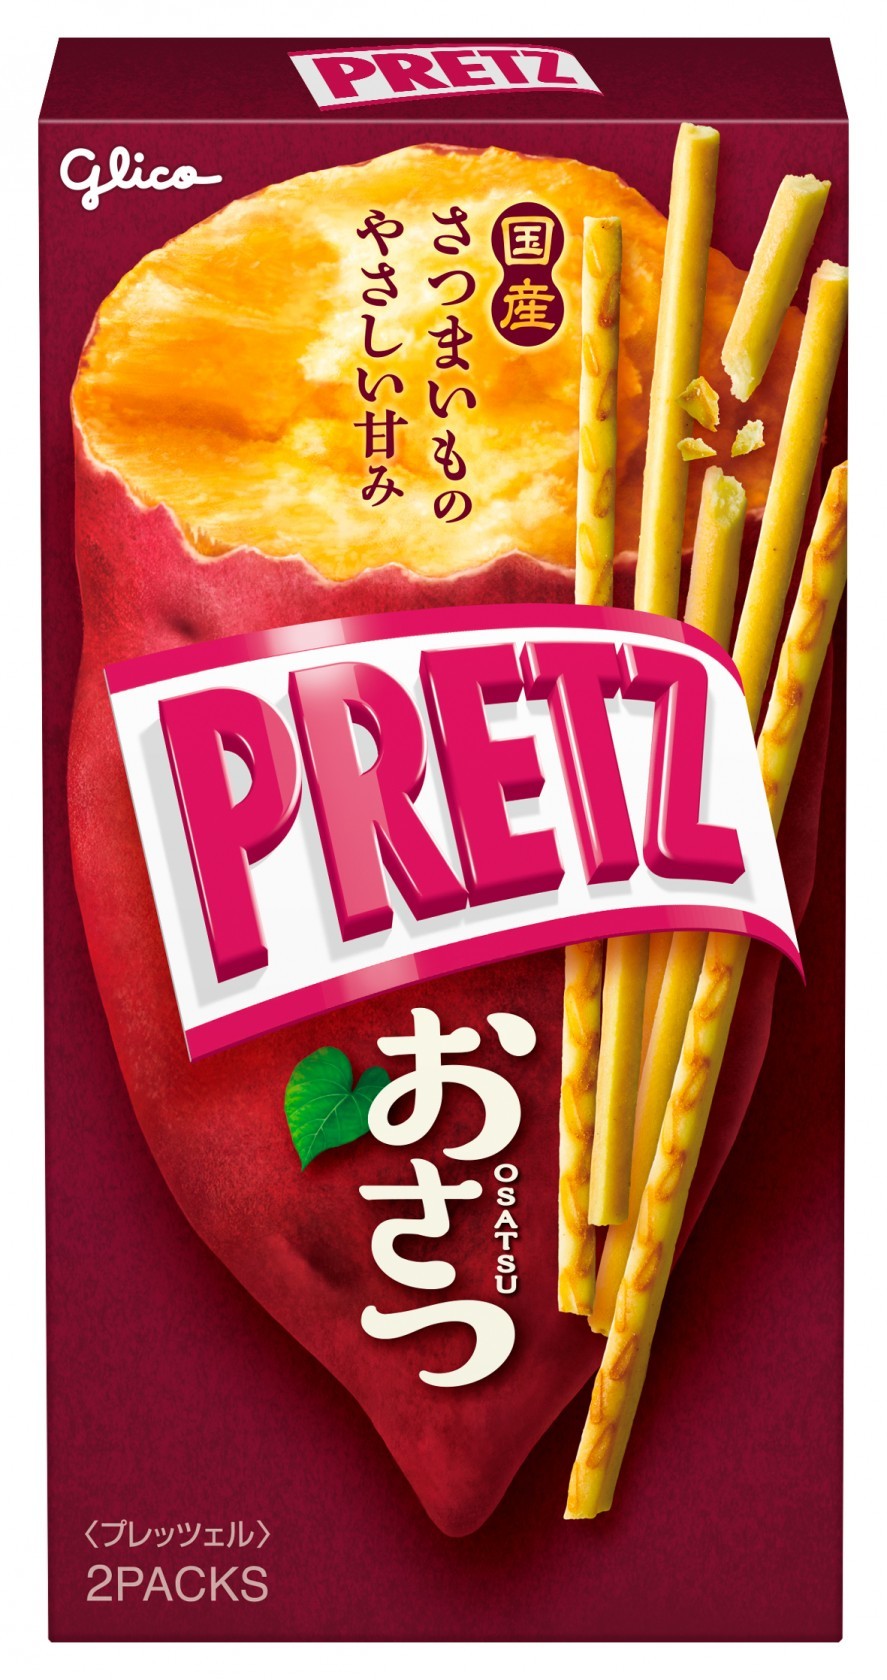 【Box】PRETZ Sweet Potato